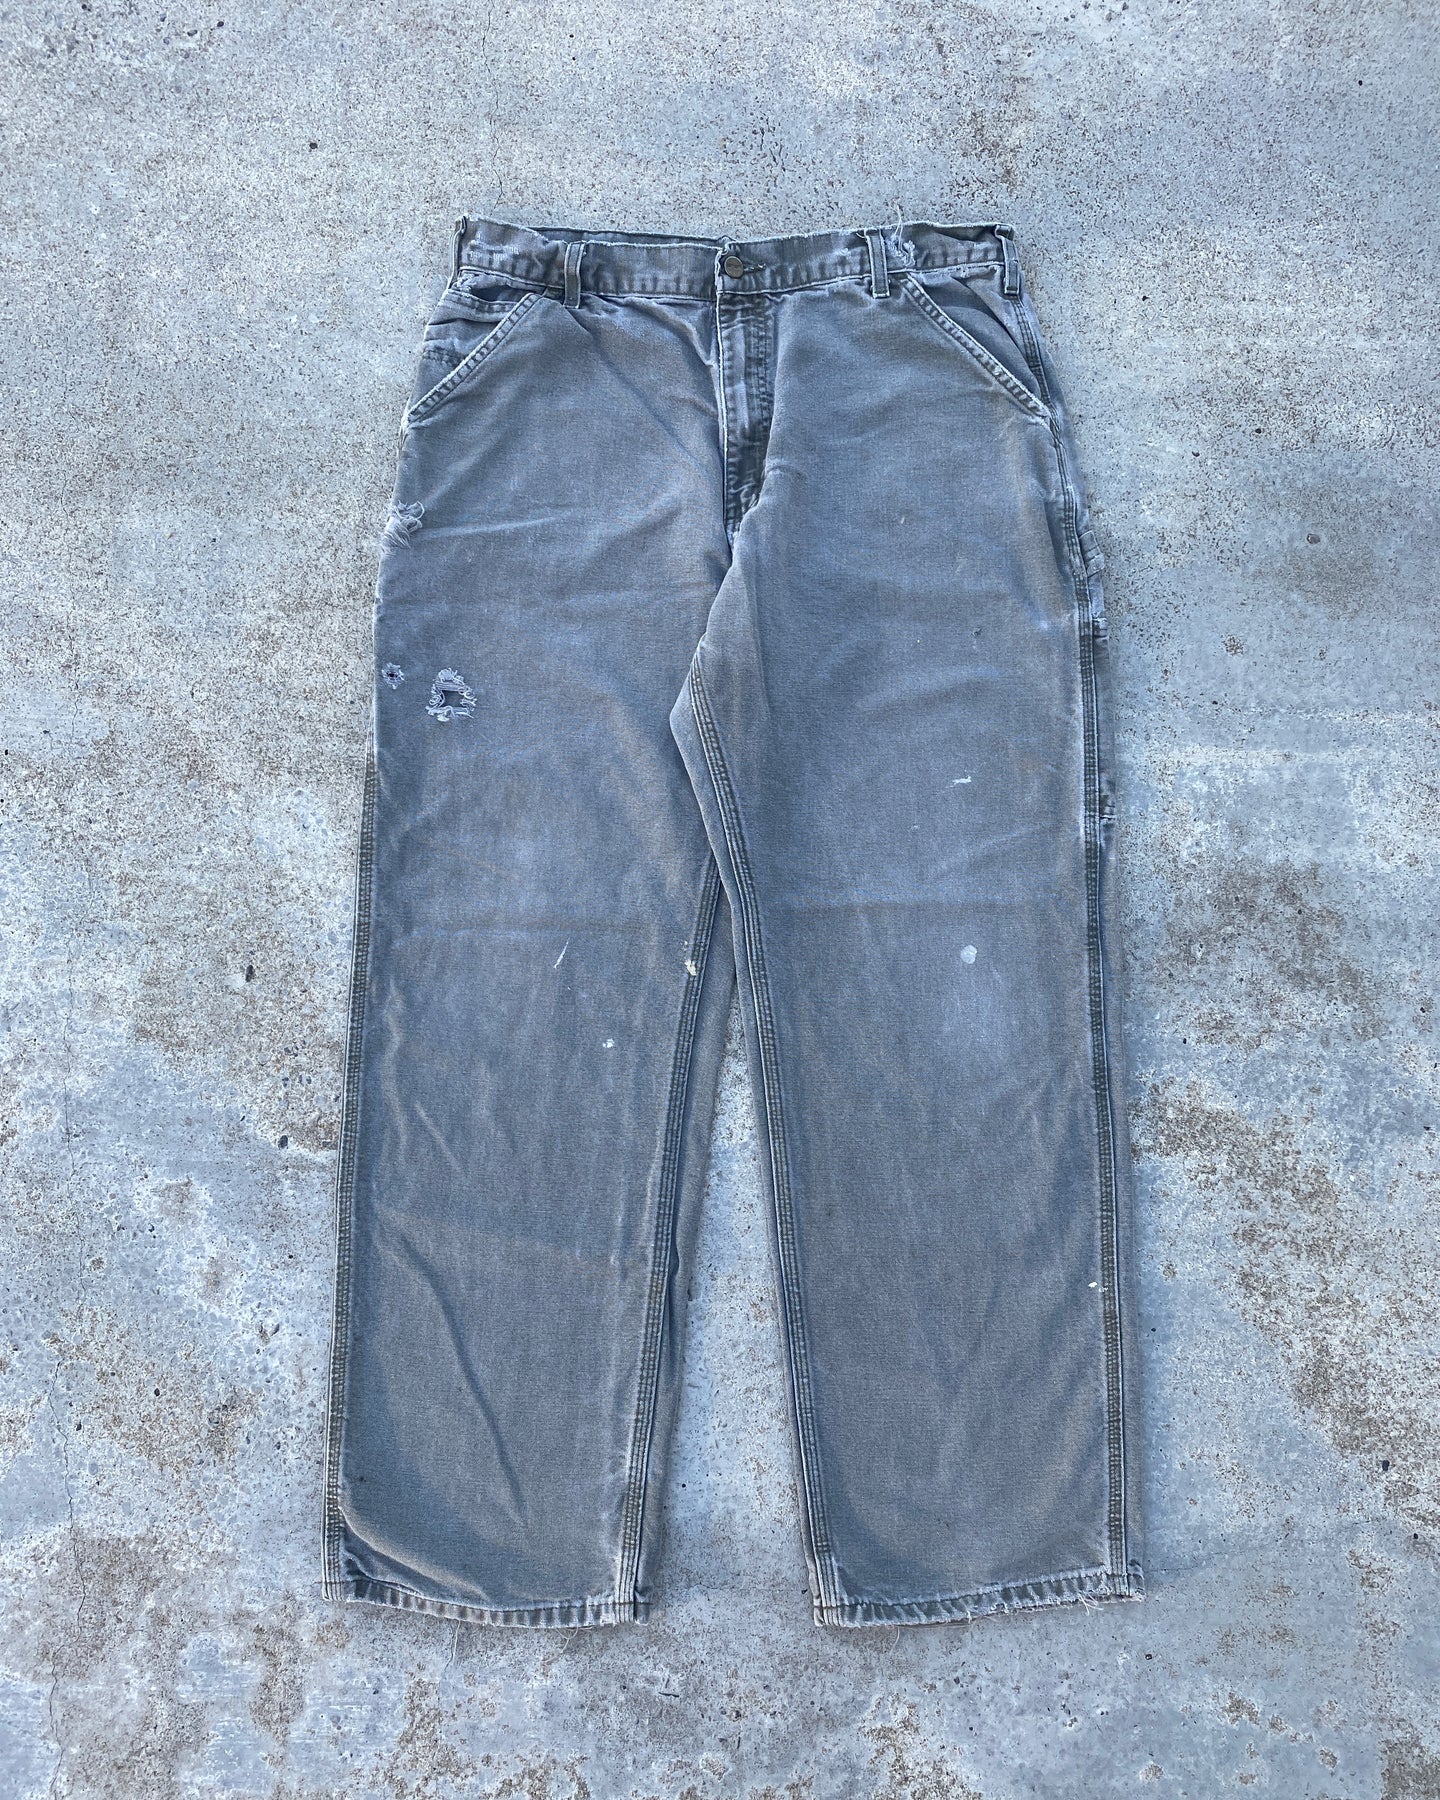 1990s Carhartt Moss Green Carpenter Pants - Size 34 x 30